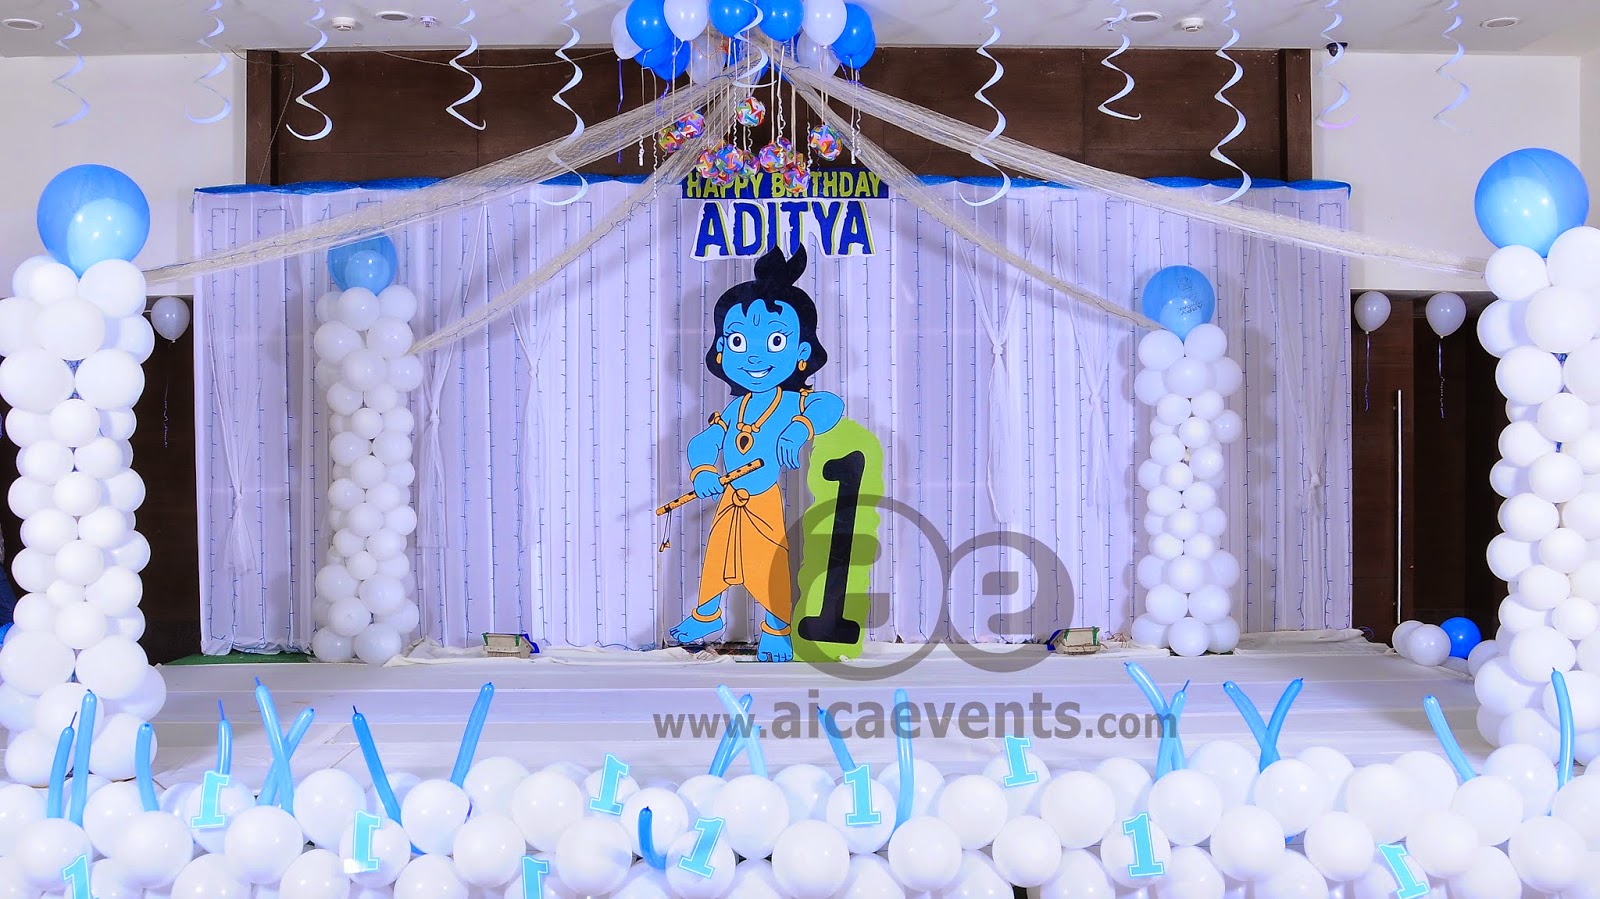 Aicaevents India  2019